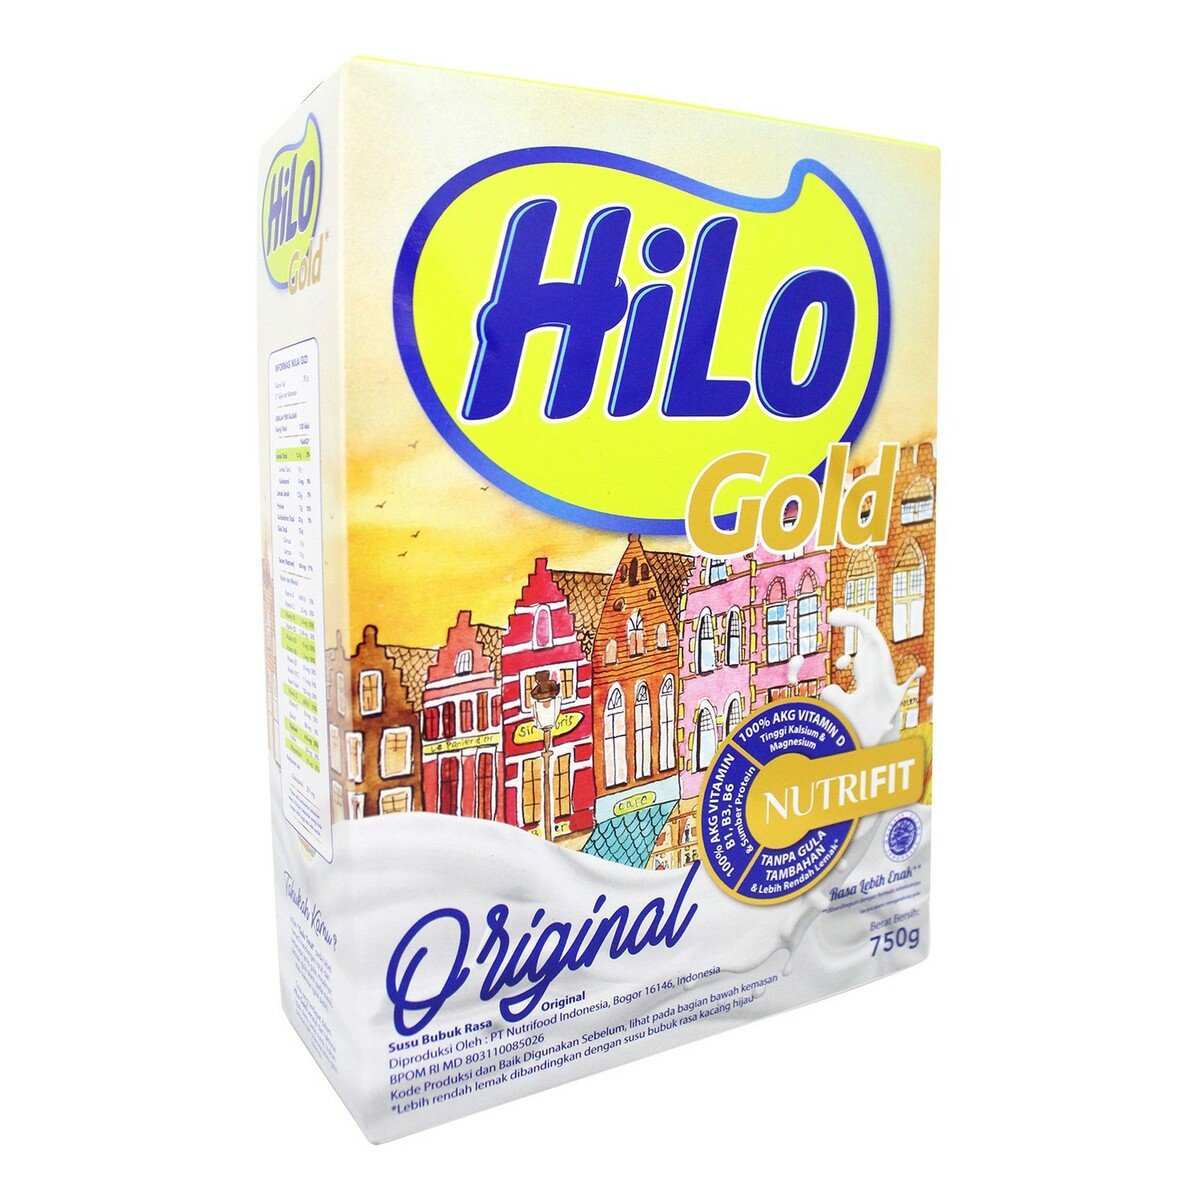 Hilo Gold Milk Plain 750g